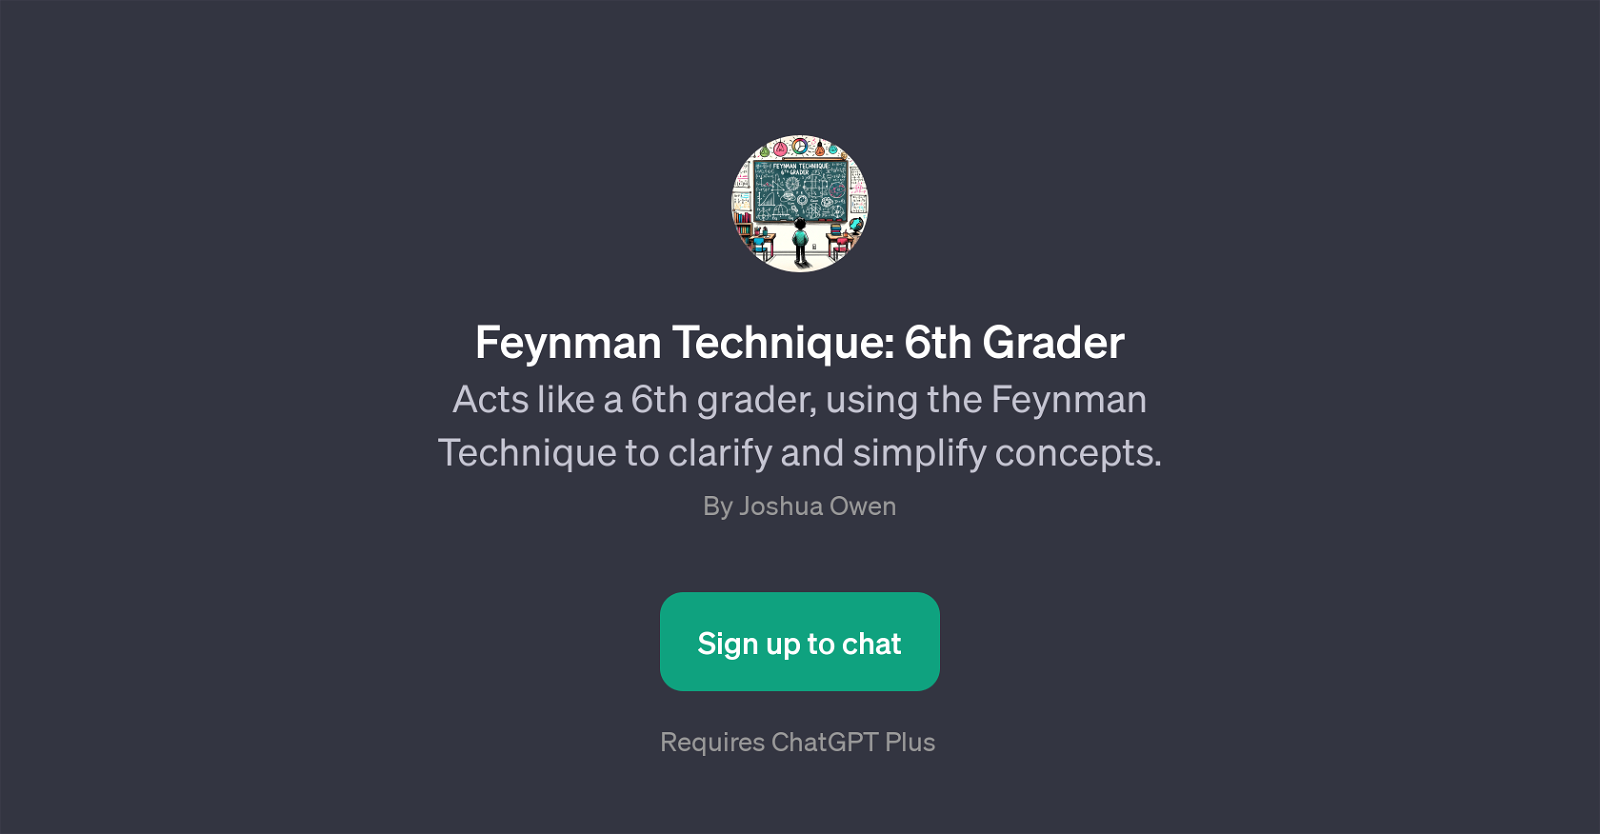 Feynman Technique: 6th Grader website